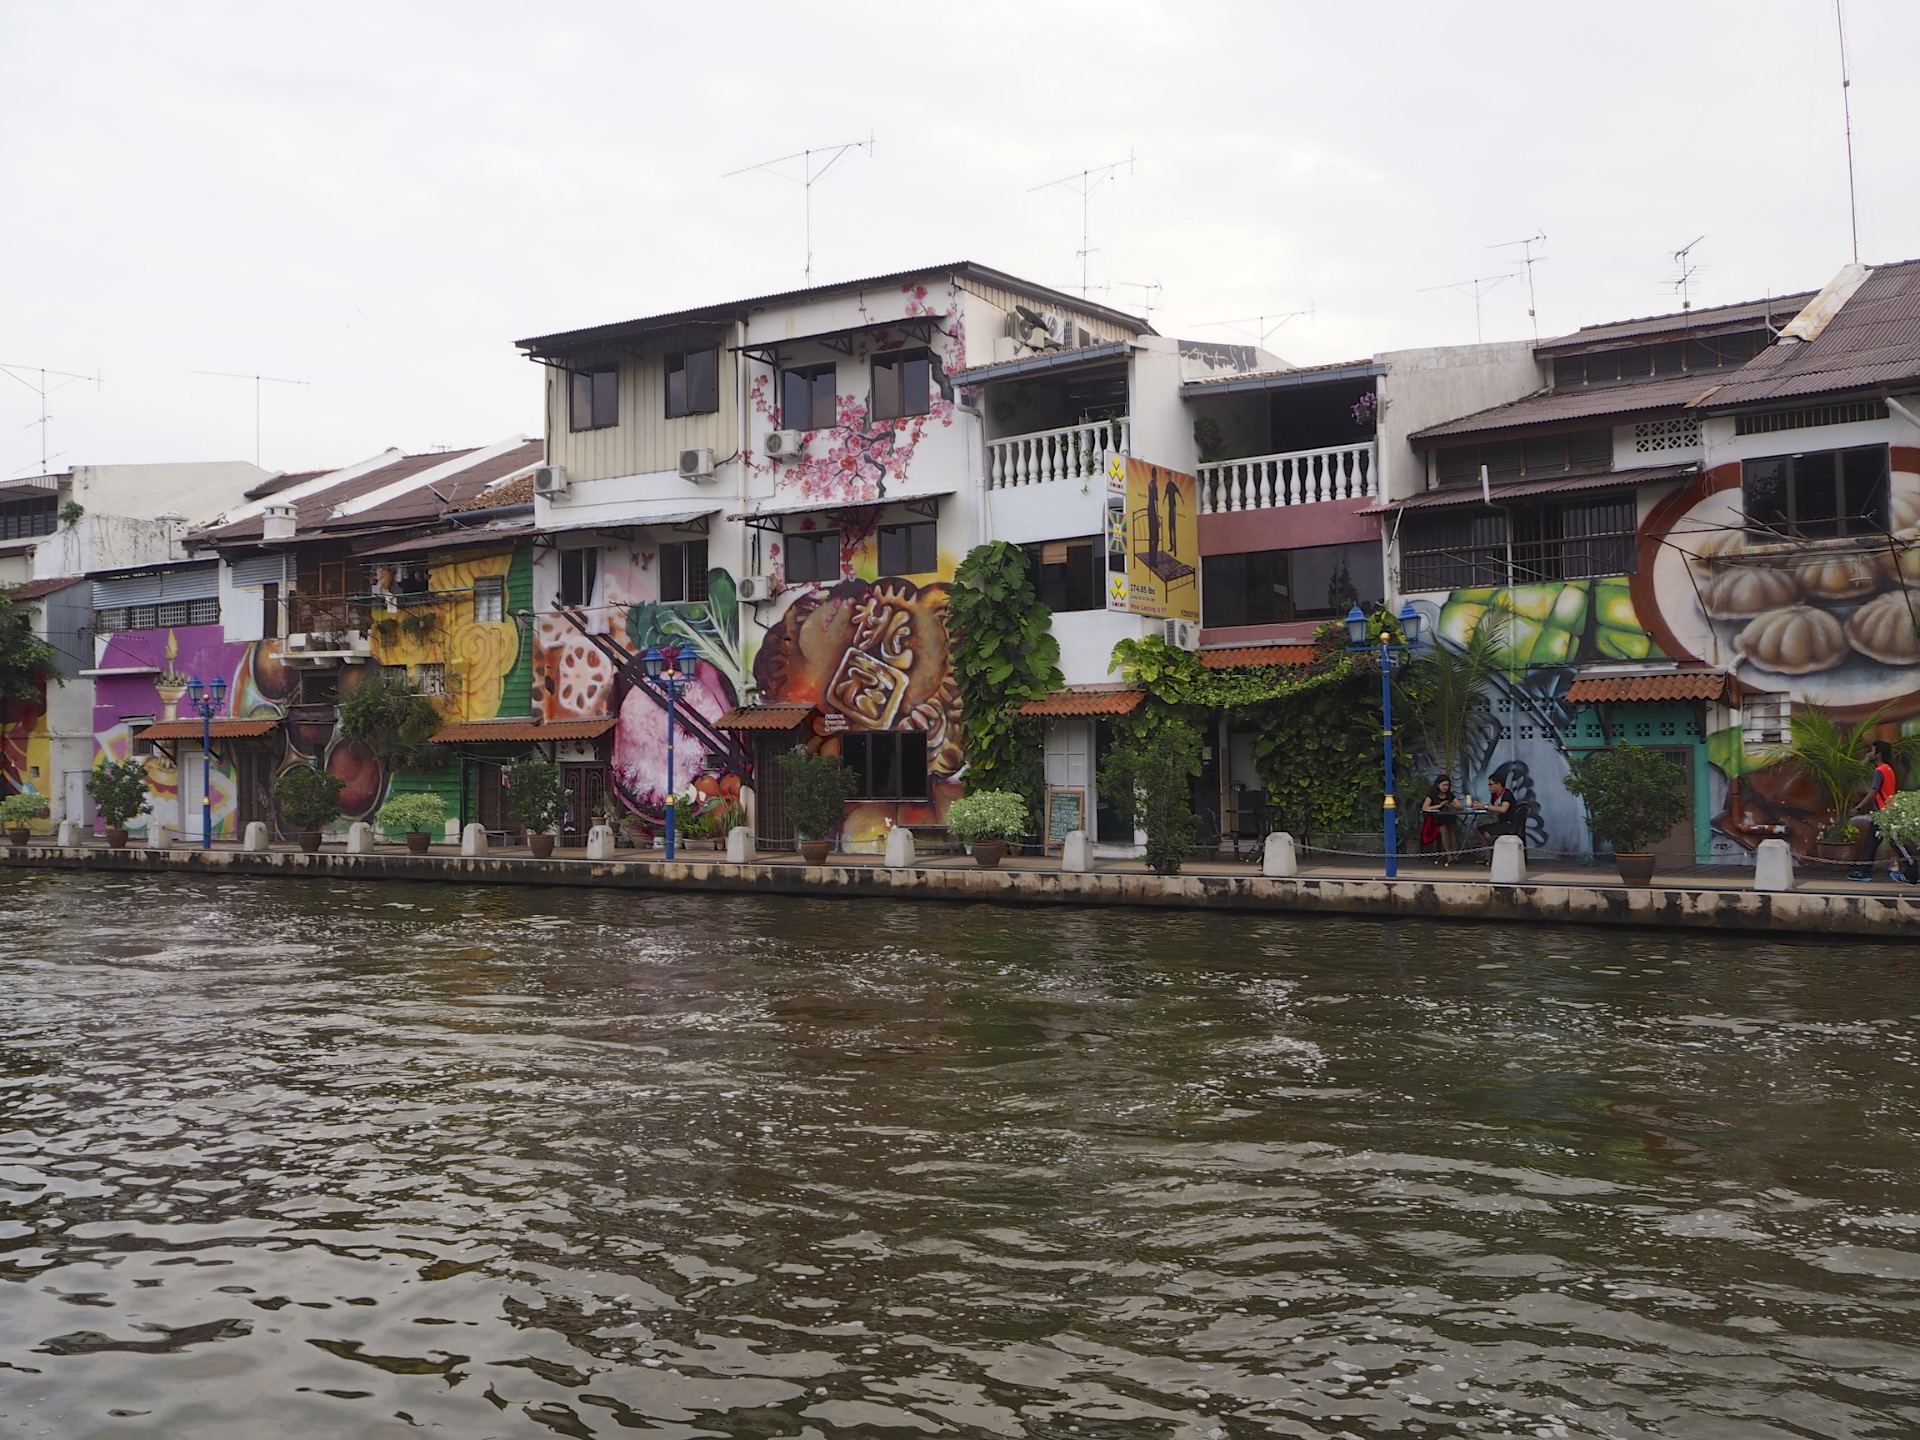 Casas pintadas al borde del río, uno de esos es nuestro hostal